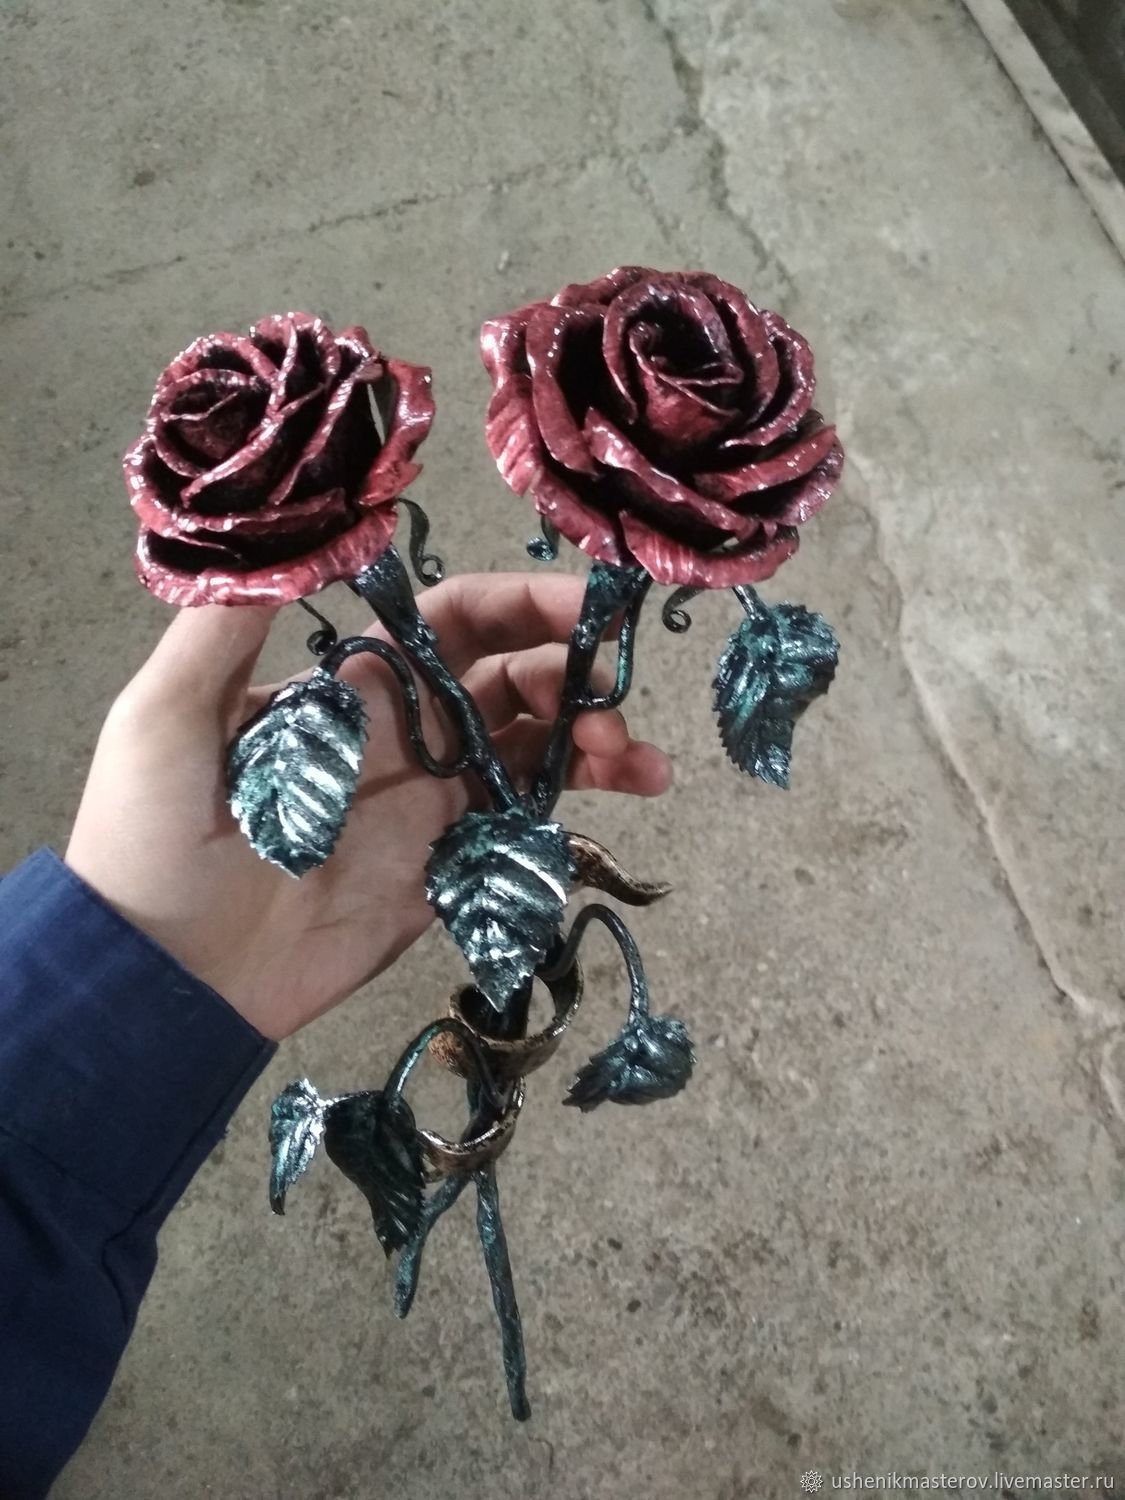 Купить кованые розы, изготовление кованой розы, фото кованых роз, цена на кованую розу